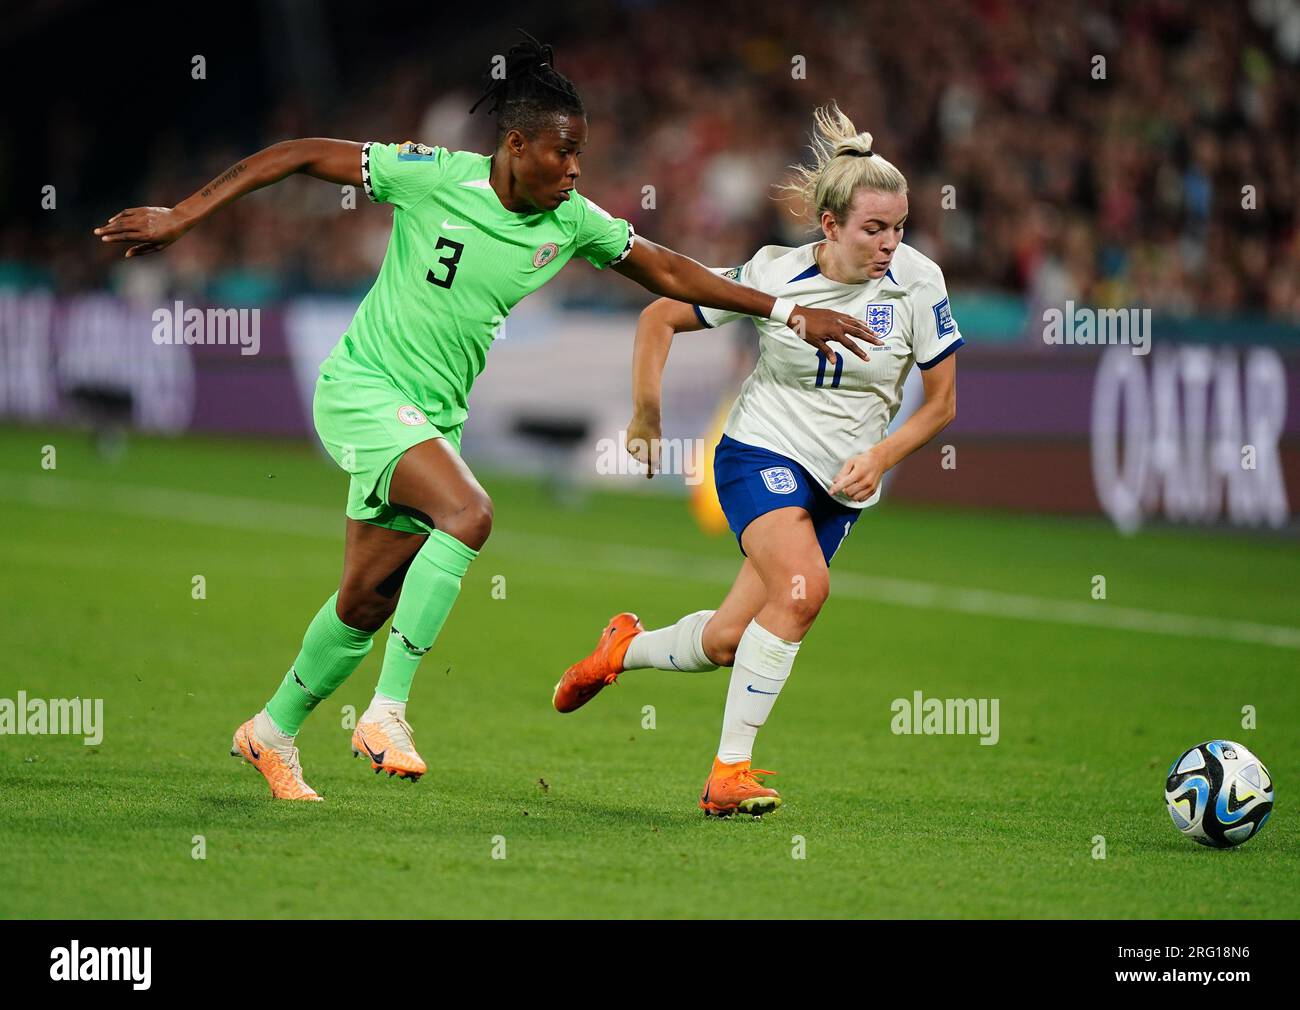 La Nigeria Osinachi Ohale e l'Inghilterra Lauren Hemp (a destra) combattono per la palla durante la Coppa del mondo femminile FIFA, Round of 16 match allo stadio di Brisbane, Australia. Data immagine: Lunedì 7 agosto 2023. Foto Stock